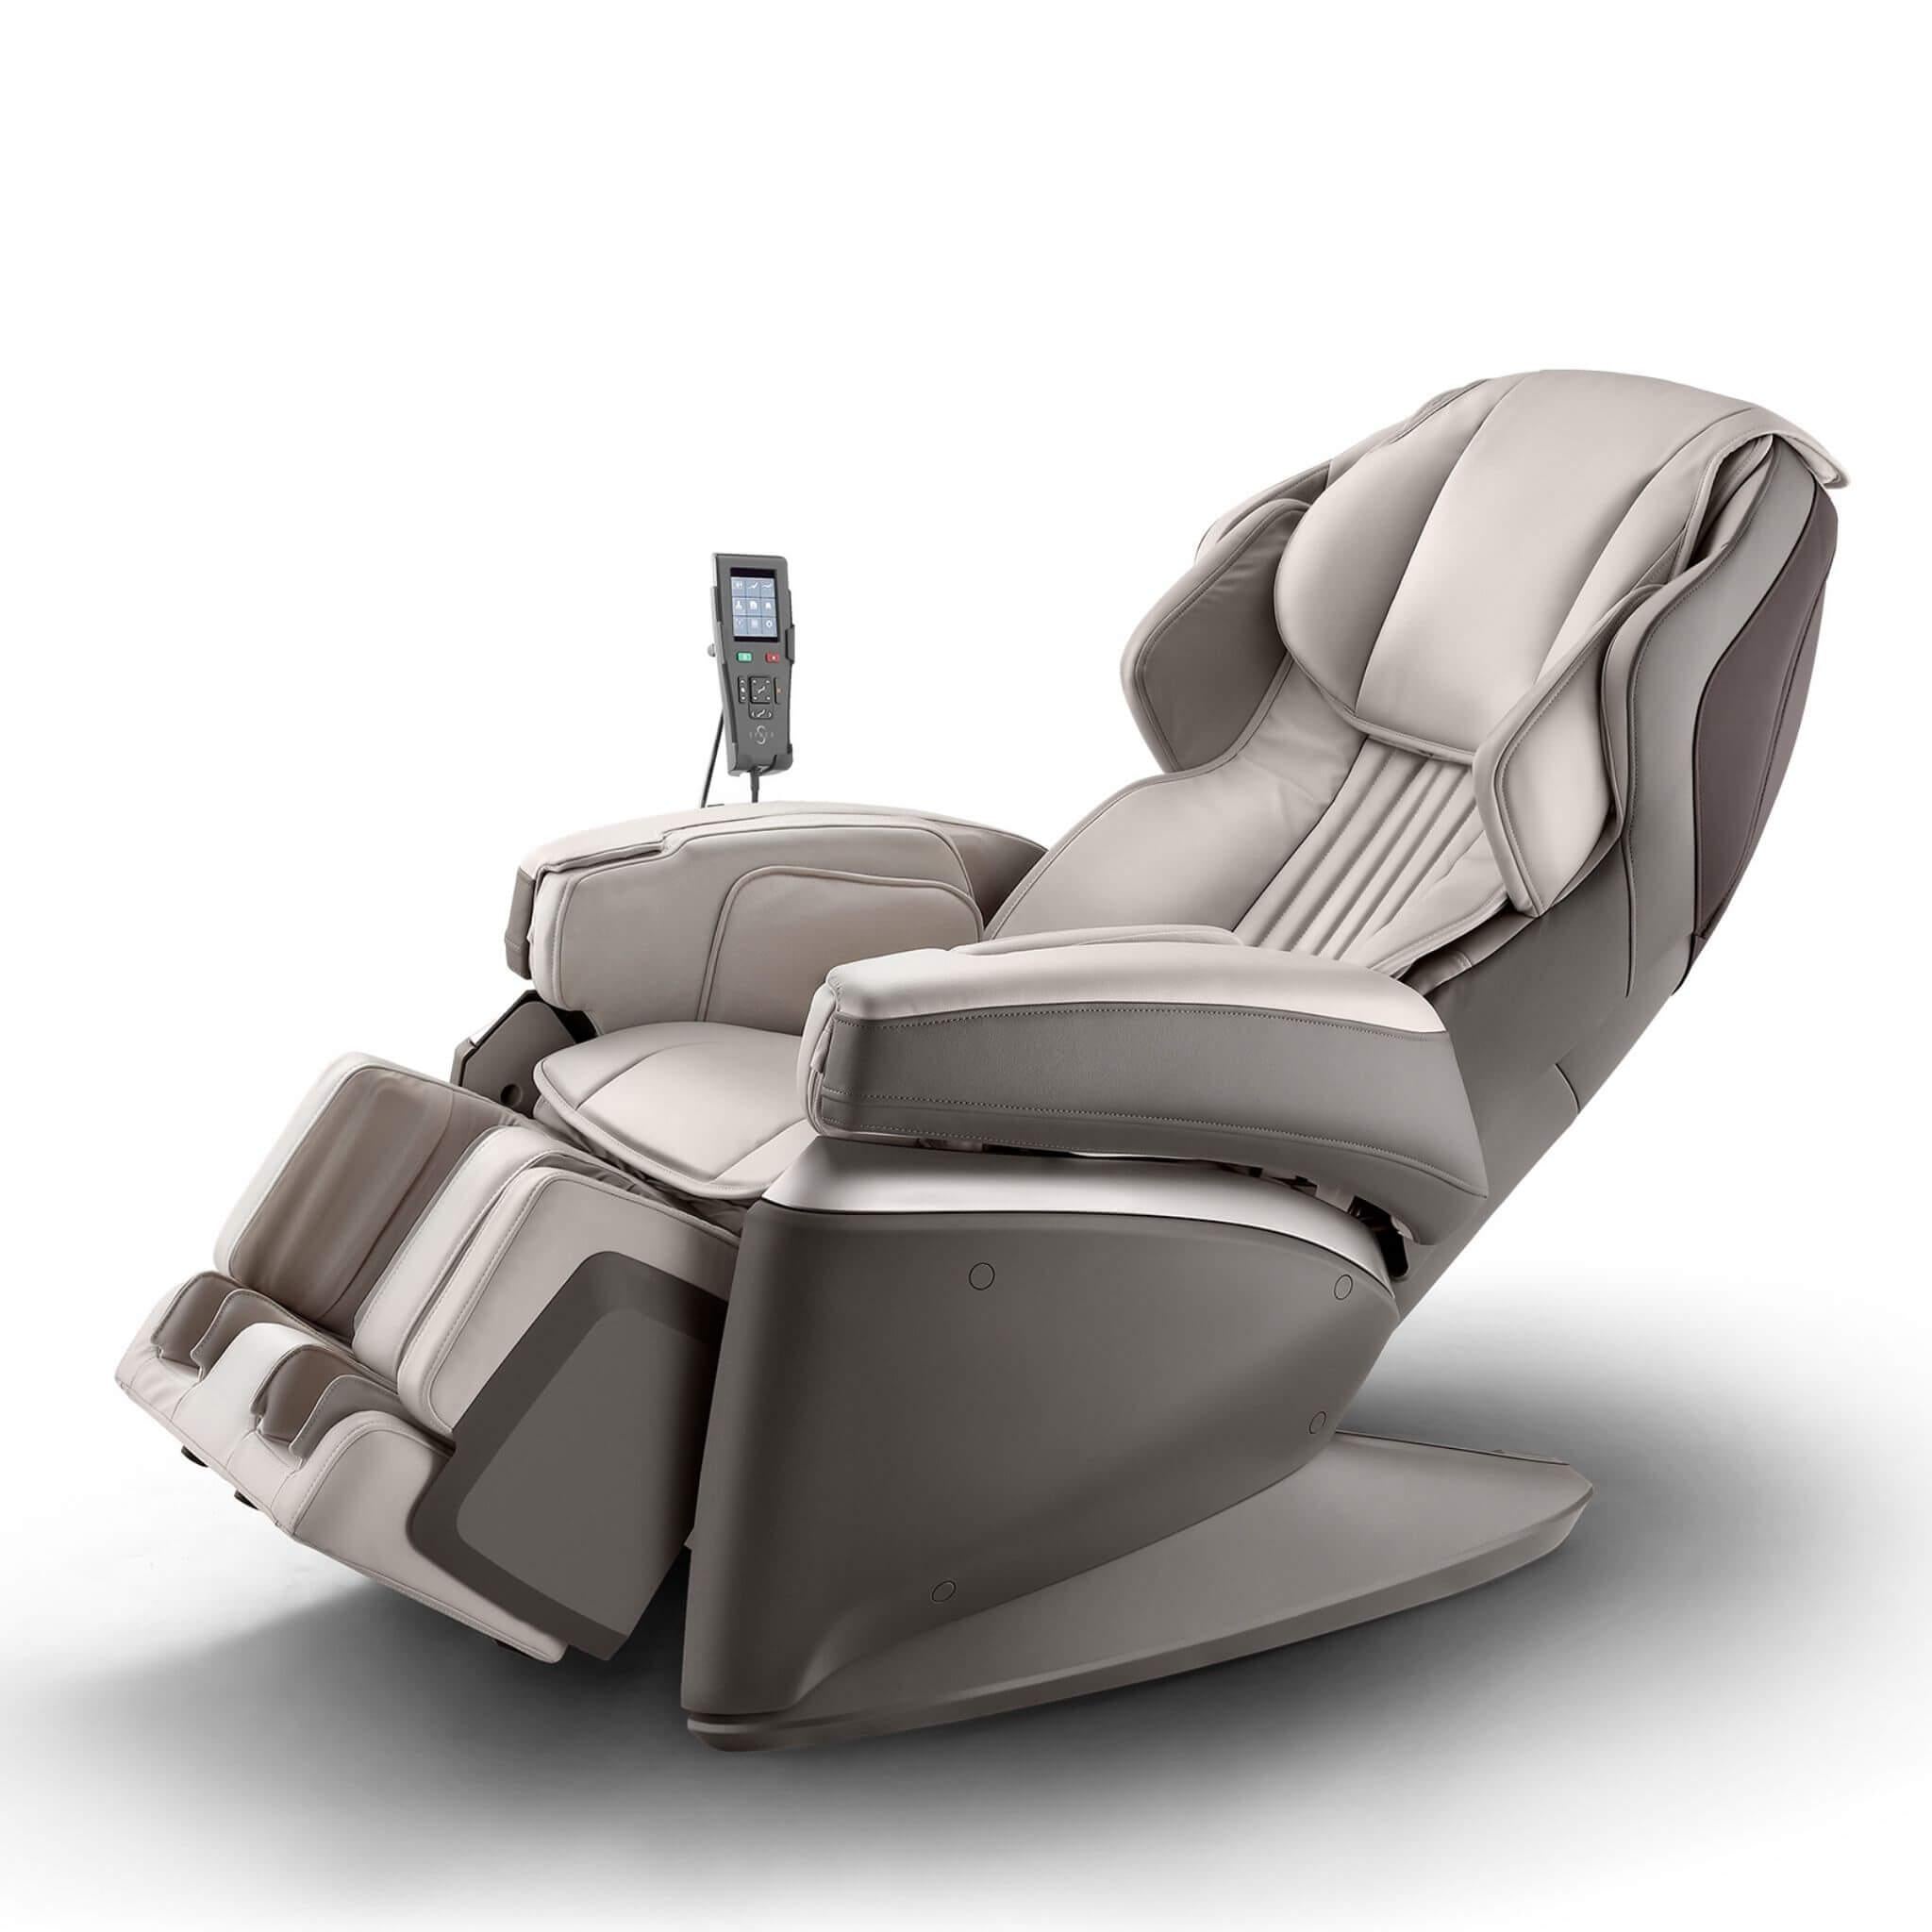 JP1000 Synca 4D Ultra Premium Massage Chair - SMR0036-08NA - Health & Beauty > Massage & Relaxation > Massage Chairs at zebramassagechairs.com